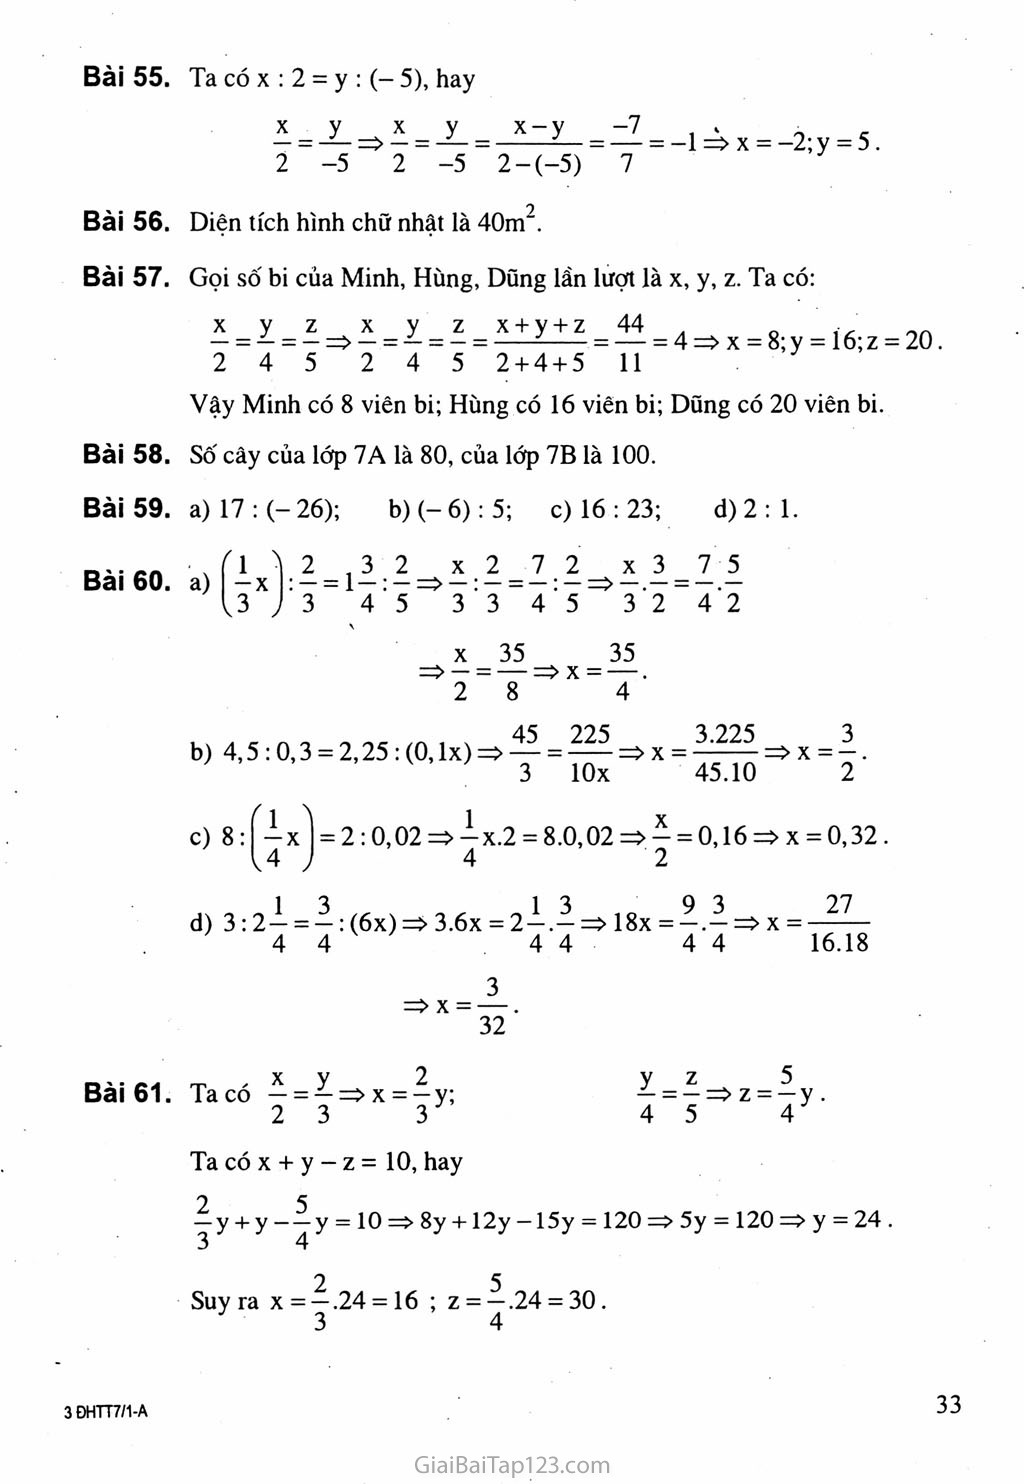 Bài 8. Tính chất của dãy tỉ số bằng nhau trang 3